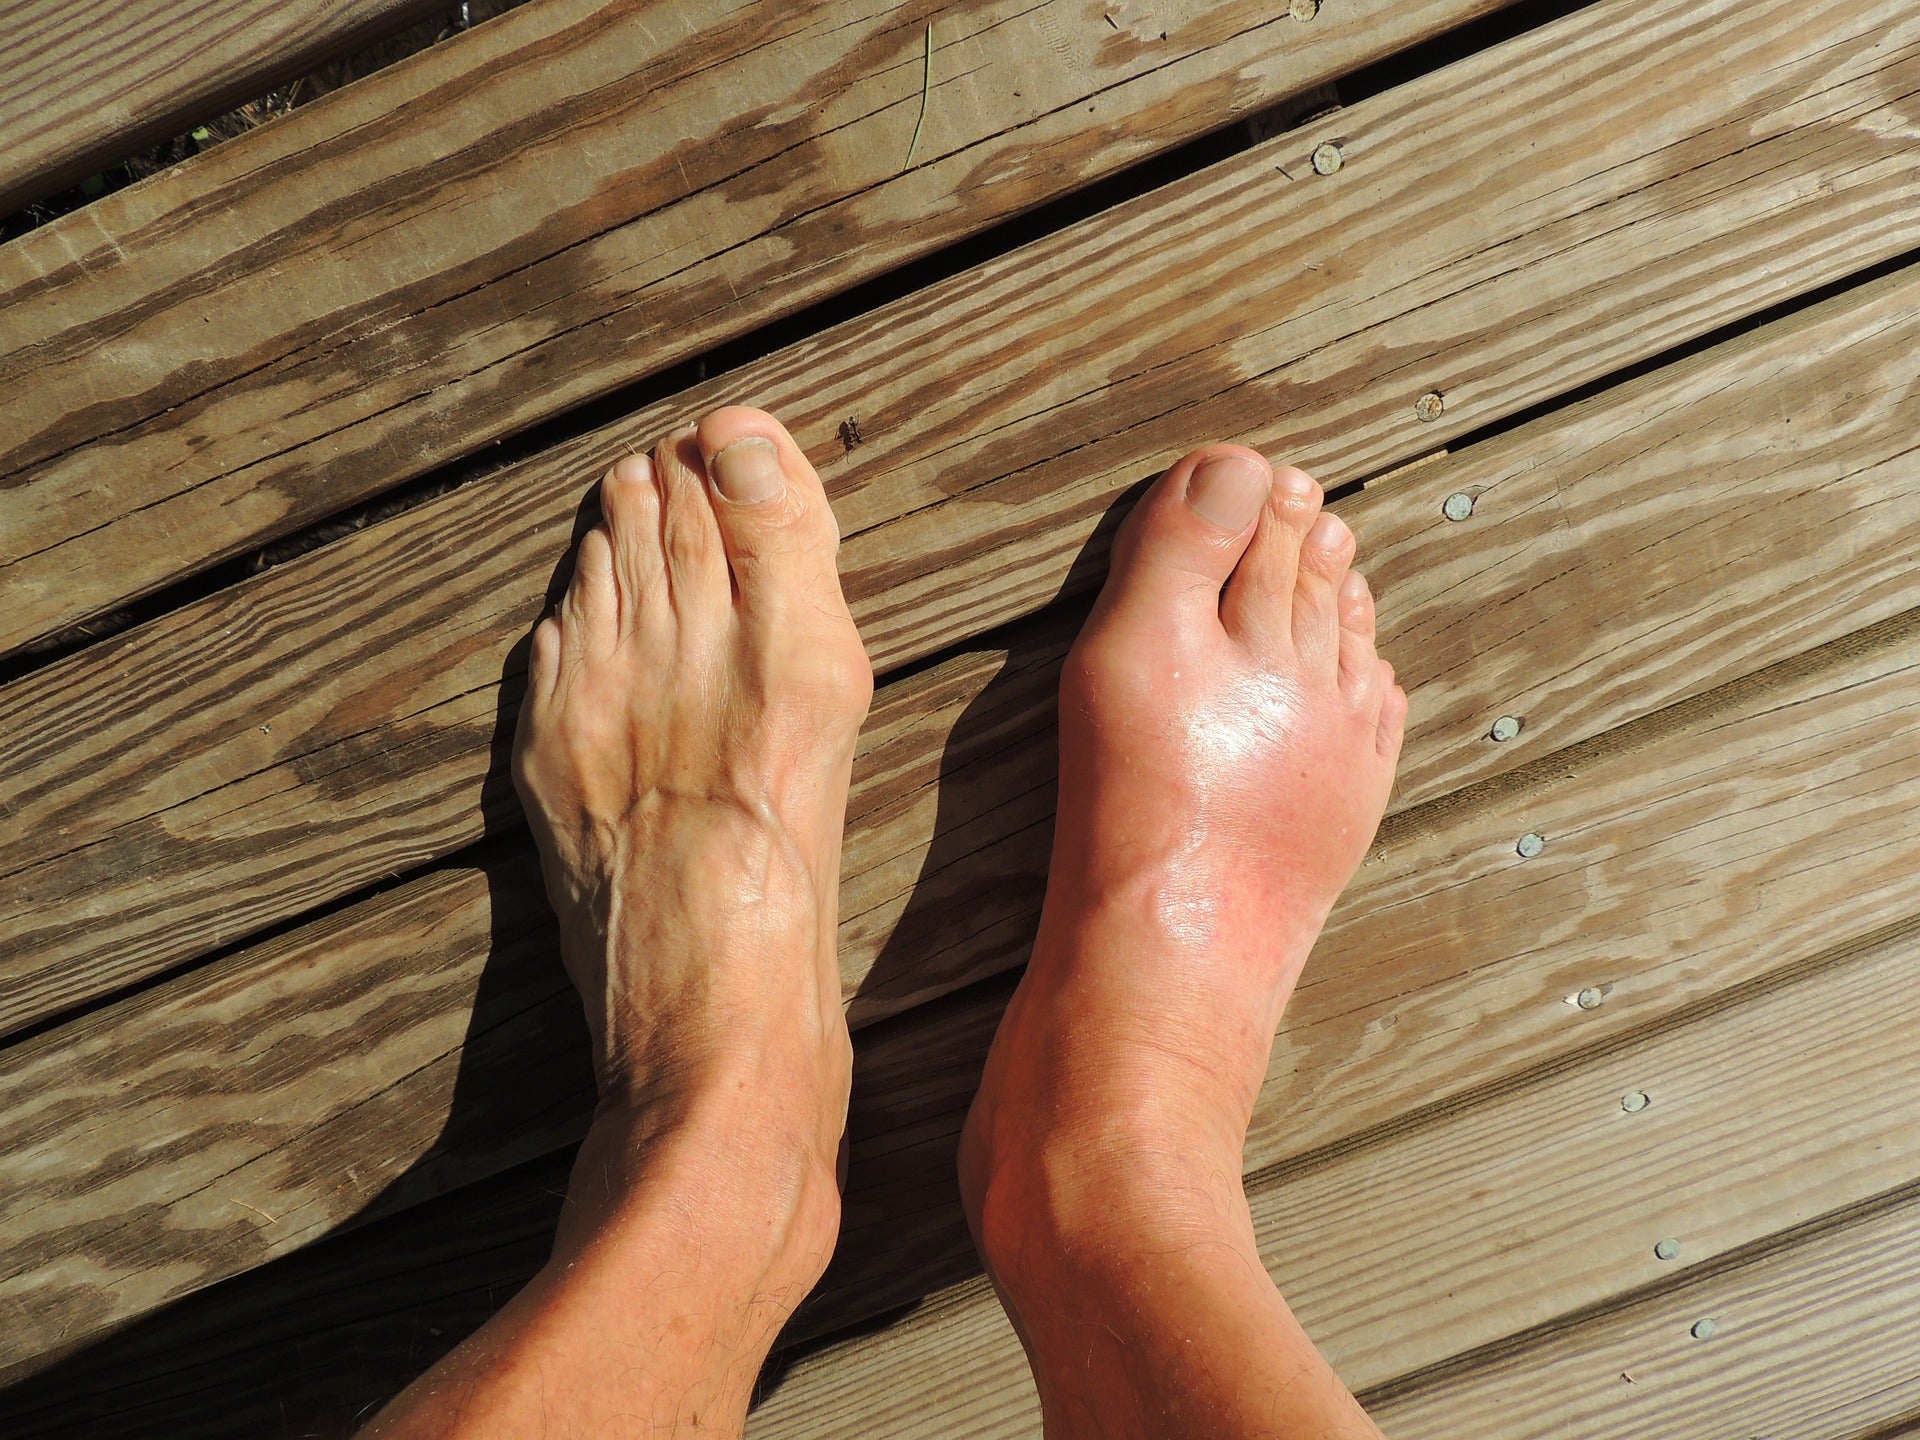 An image of a swollen feet.